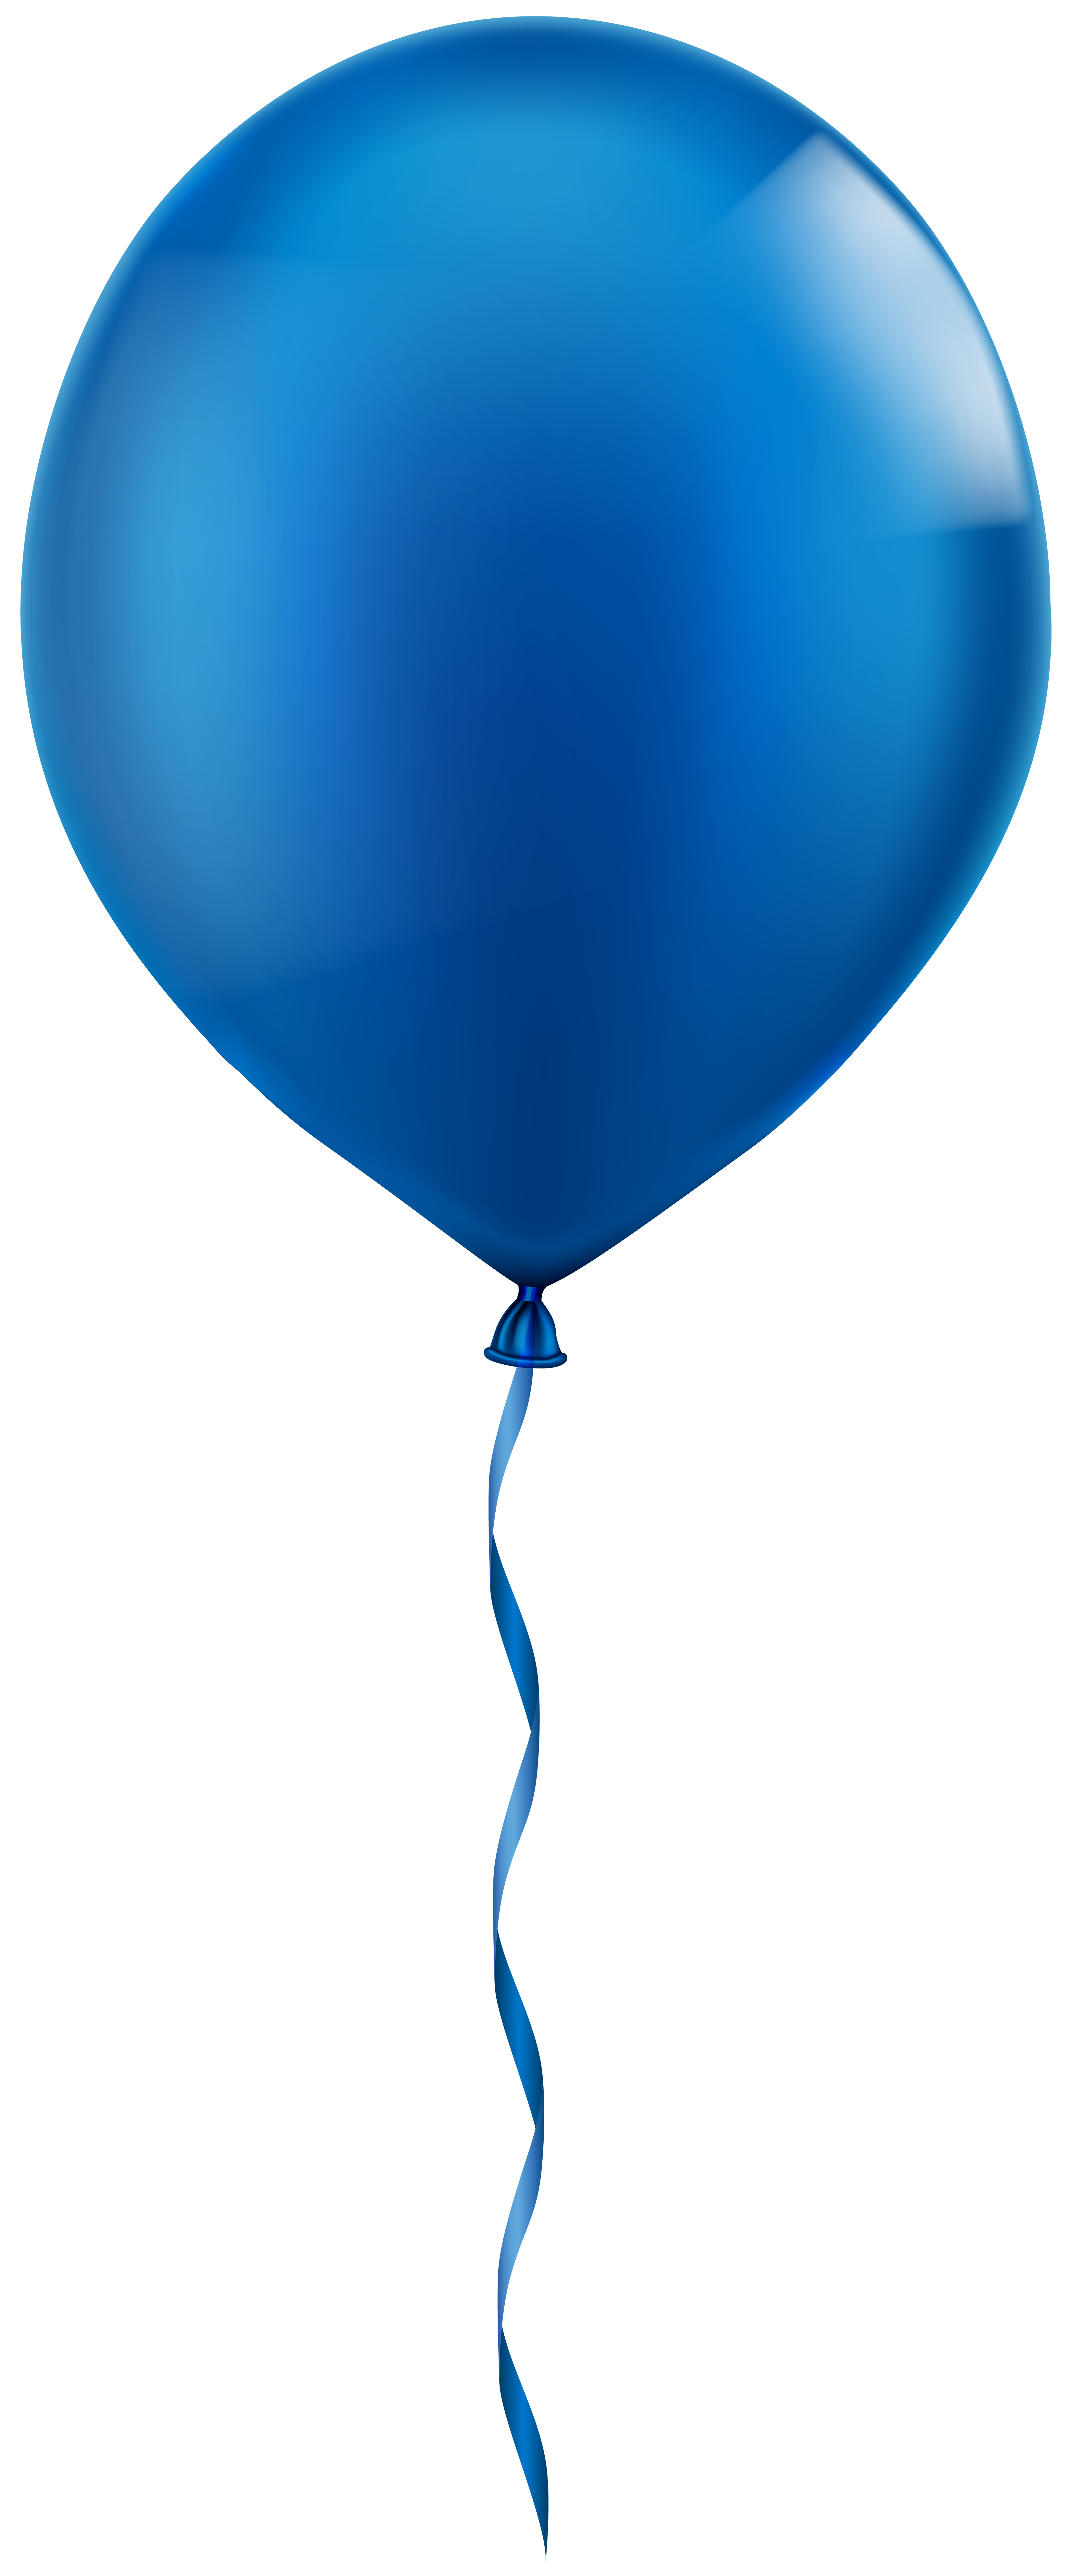 clipart balloon single